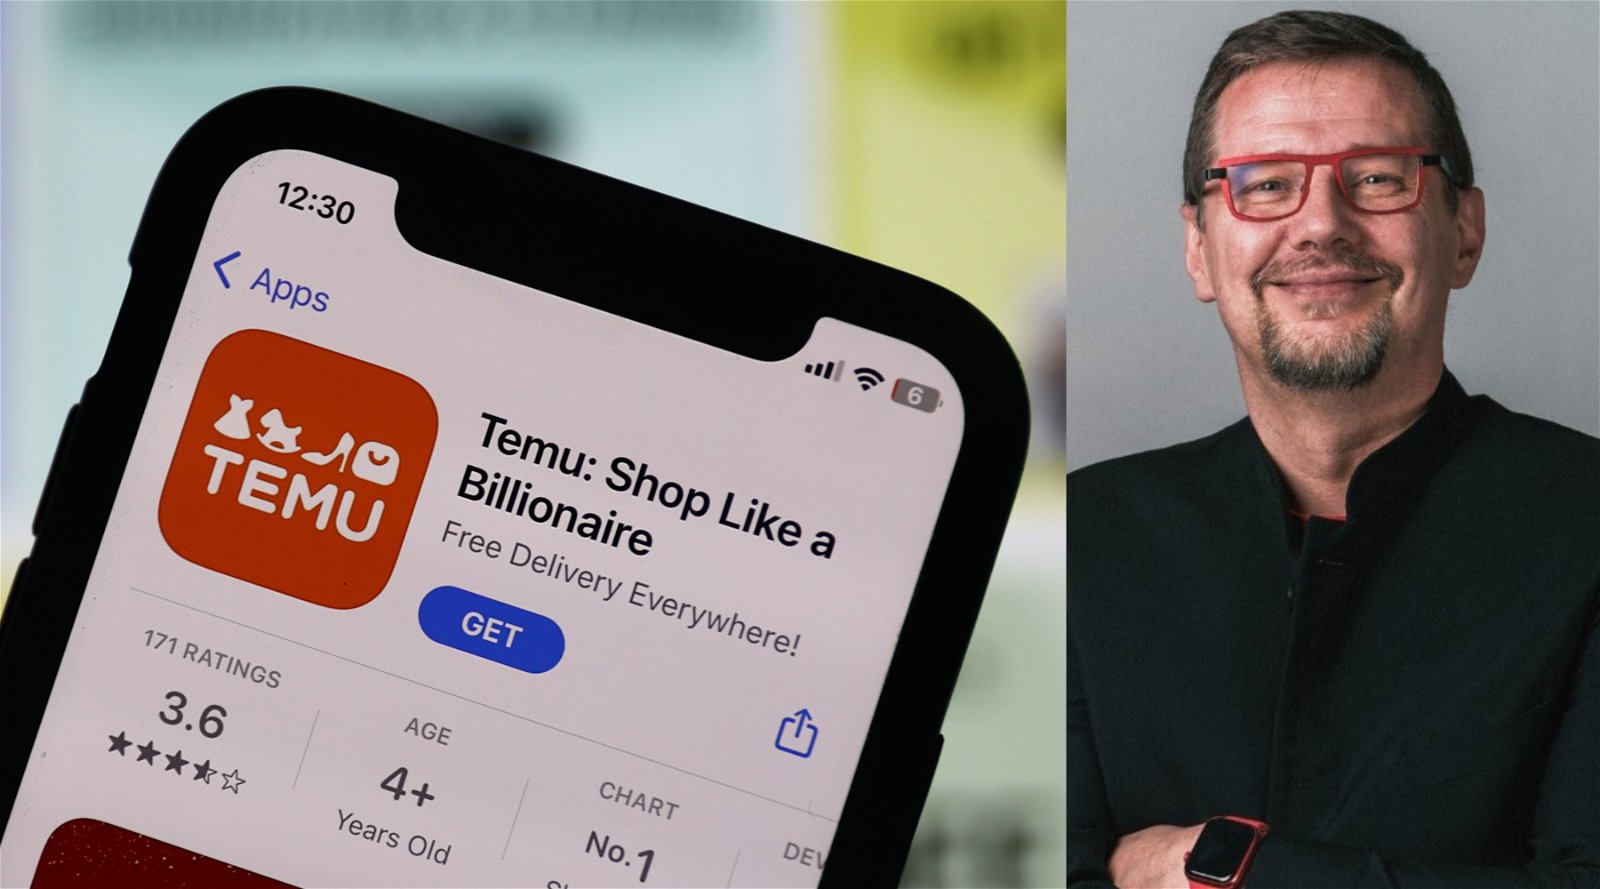 Experts warn that retail platform Temu is using dumping prices